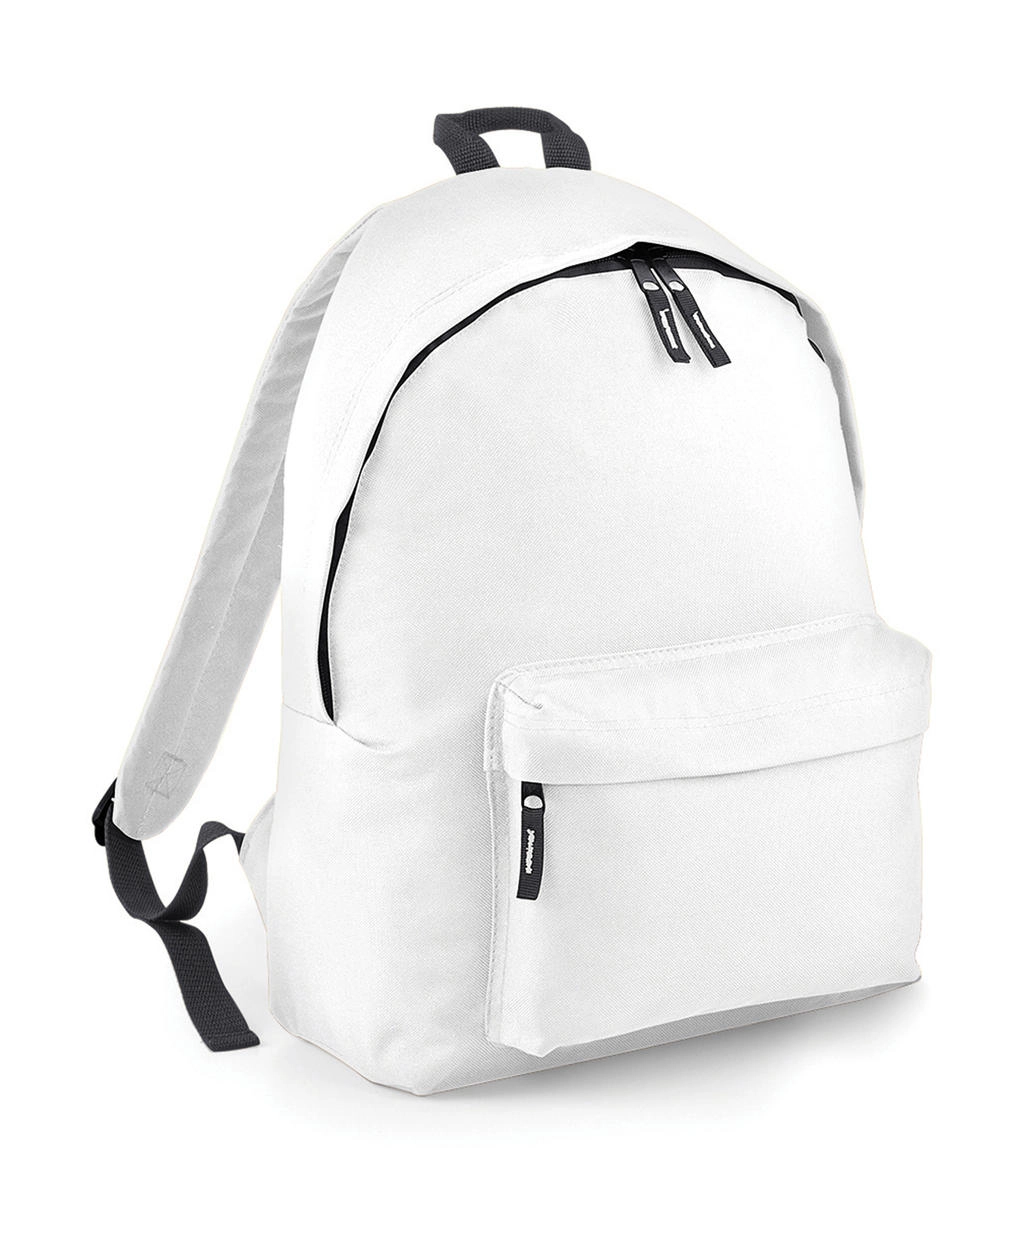 Original Fashion Backpack zum Besticken und Bedrucken in der Farbe White/Graphite Grey mit Ihren Logo, Schriftzug oder Motiv.